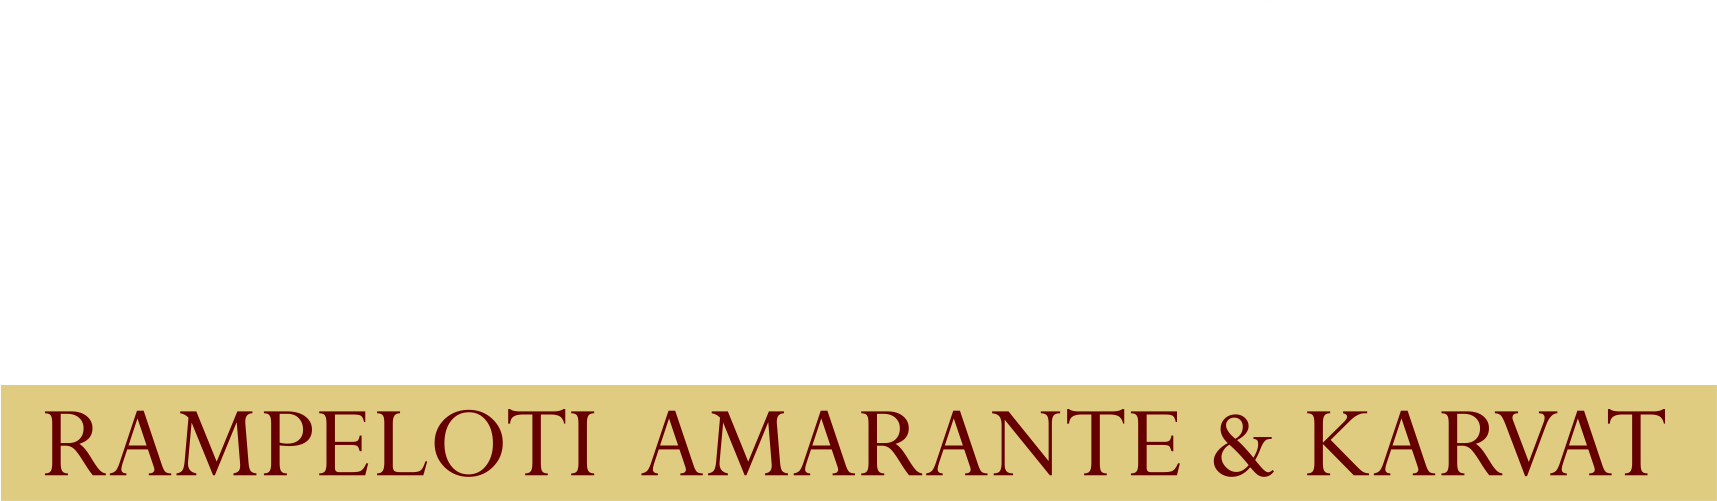 RAMPELOTI AMARANTE & KARVAT